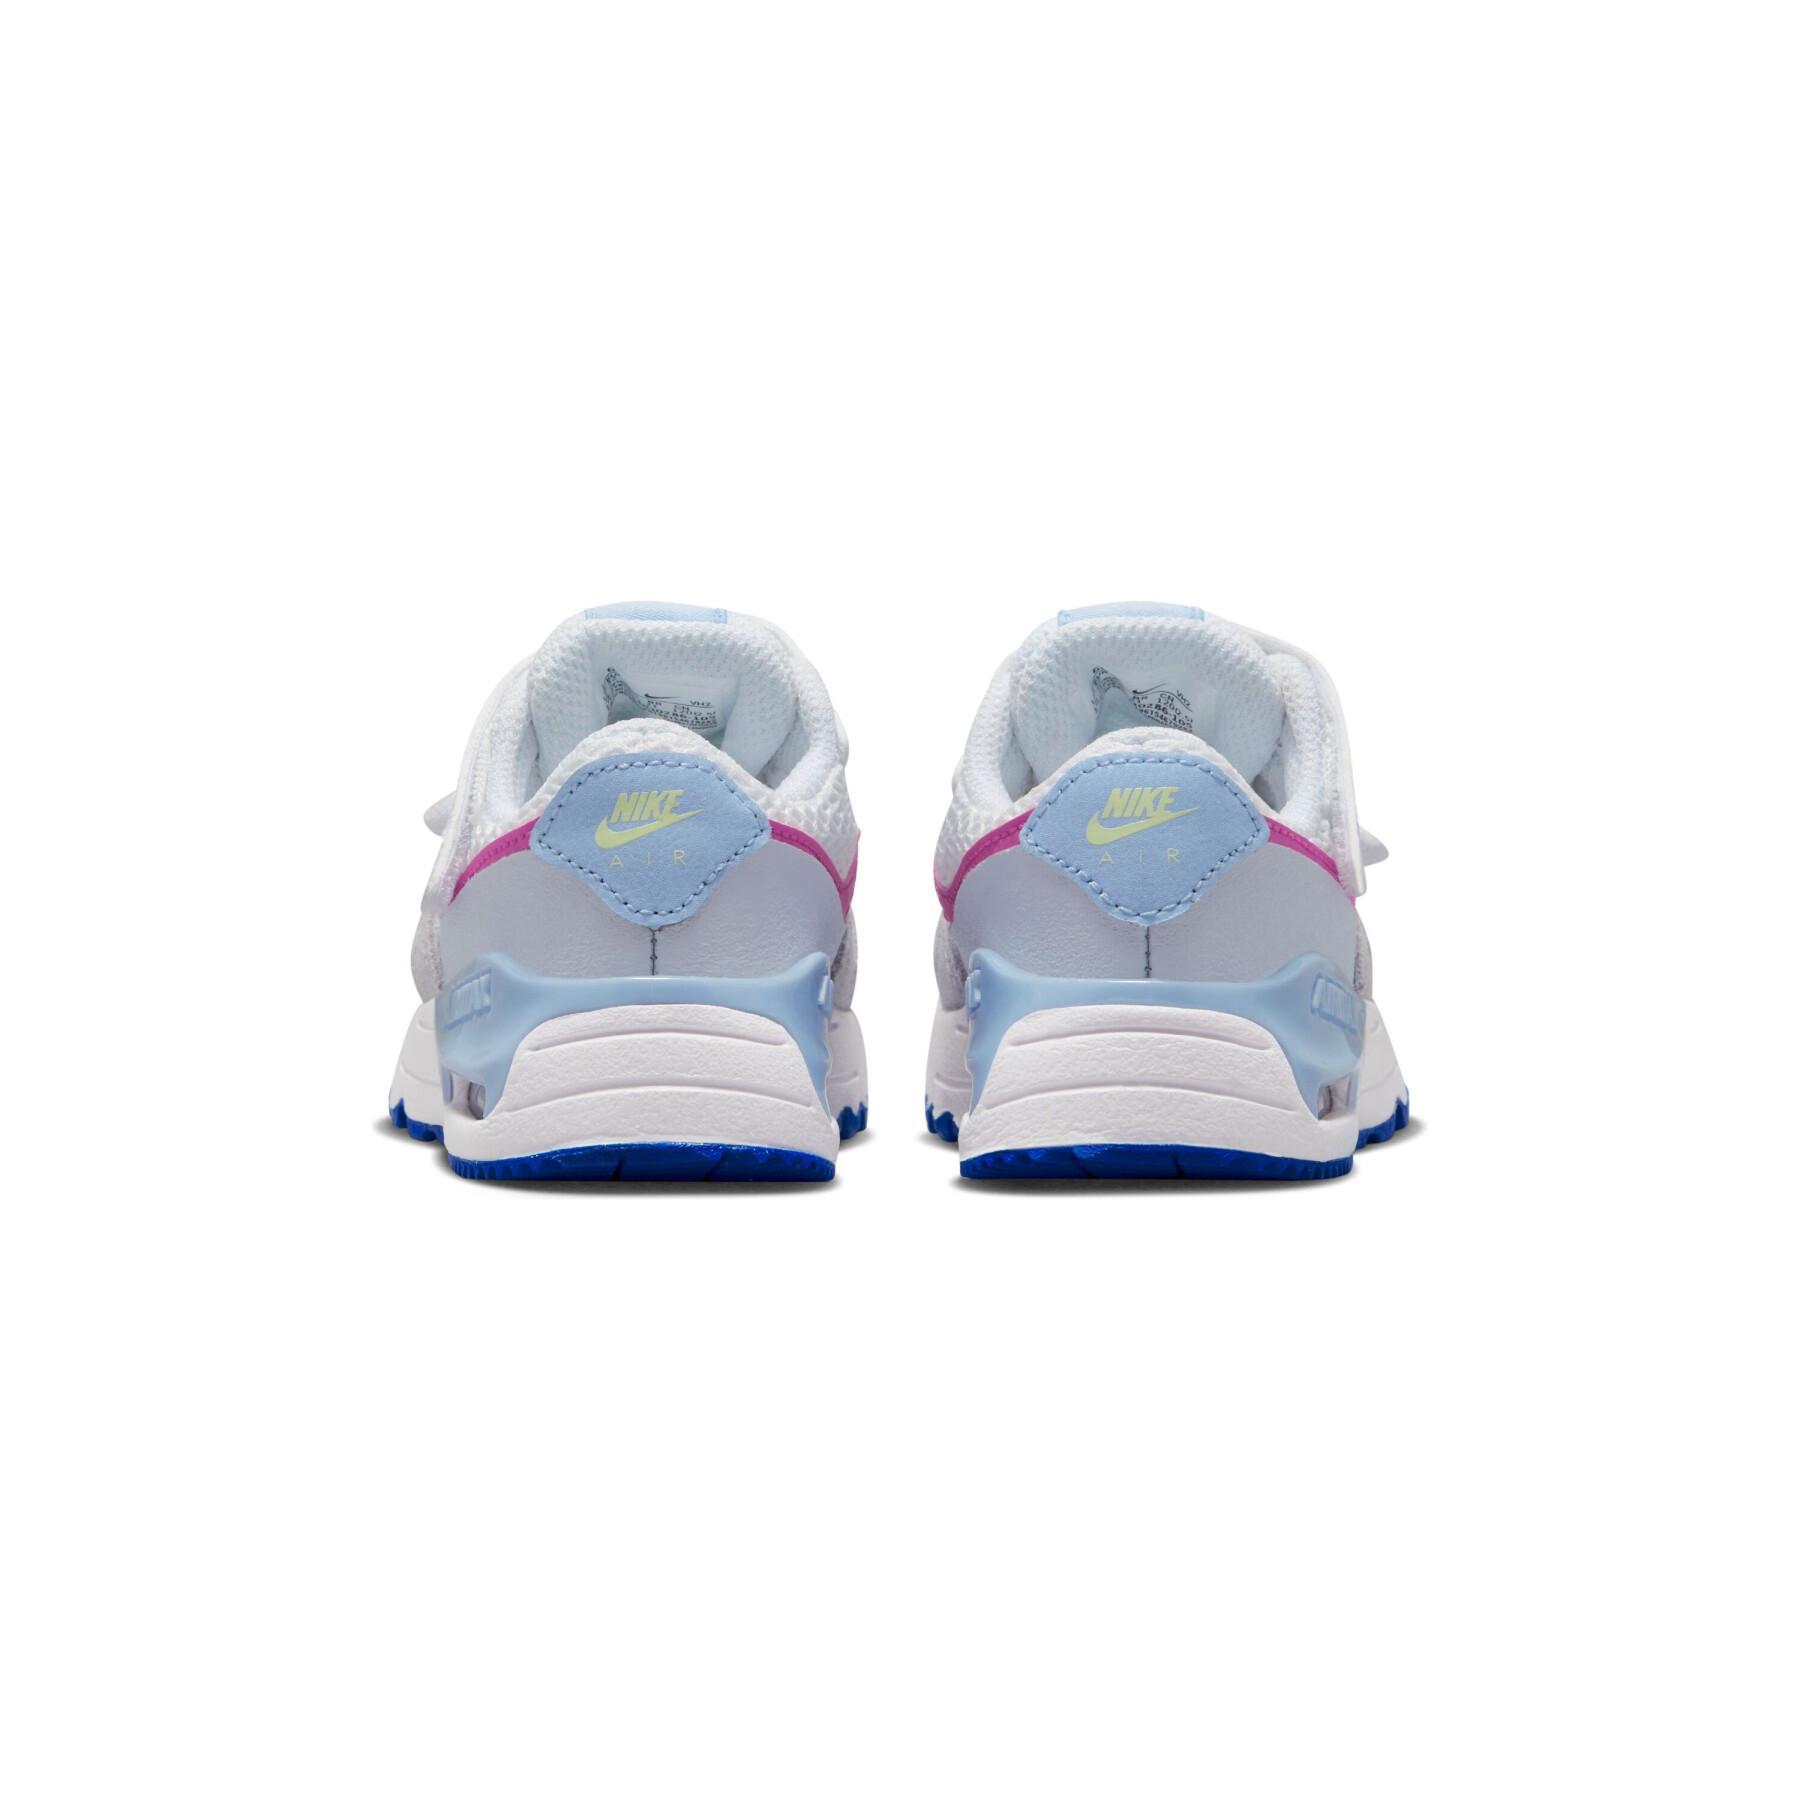 Tränare för baby boy Nike Air Max Systm